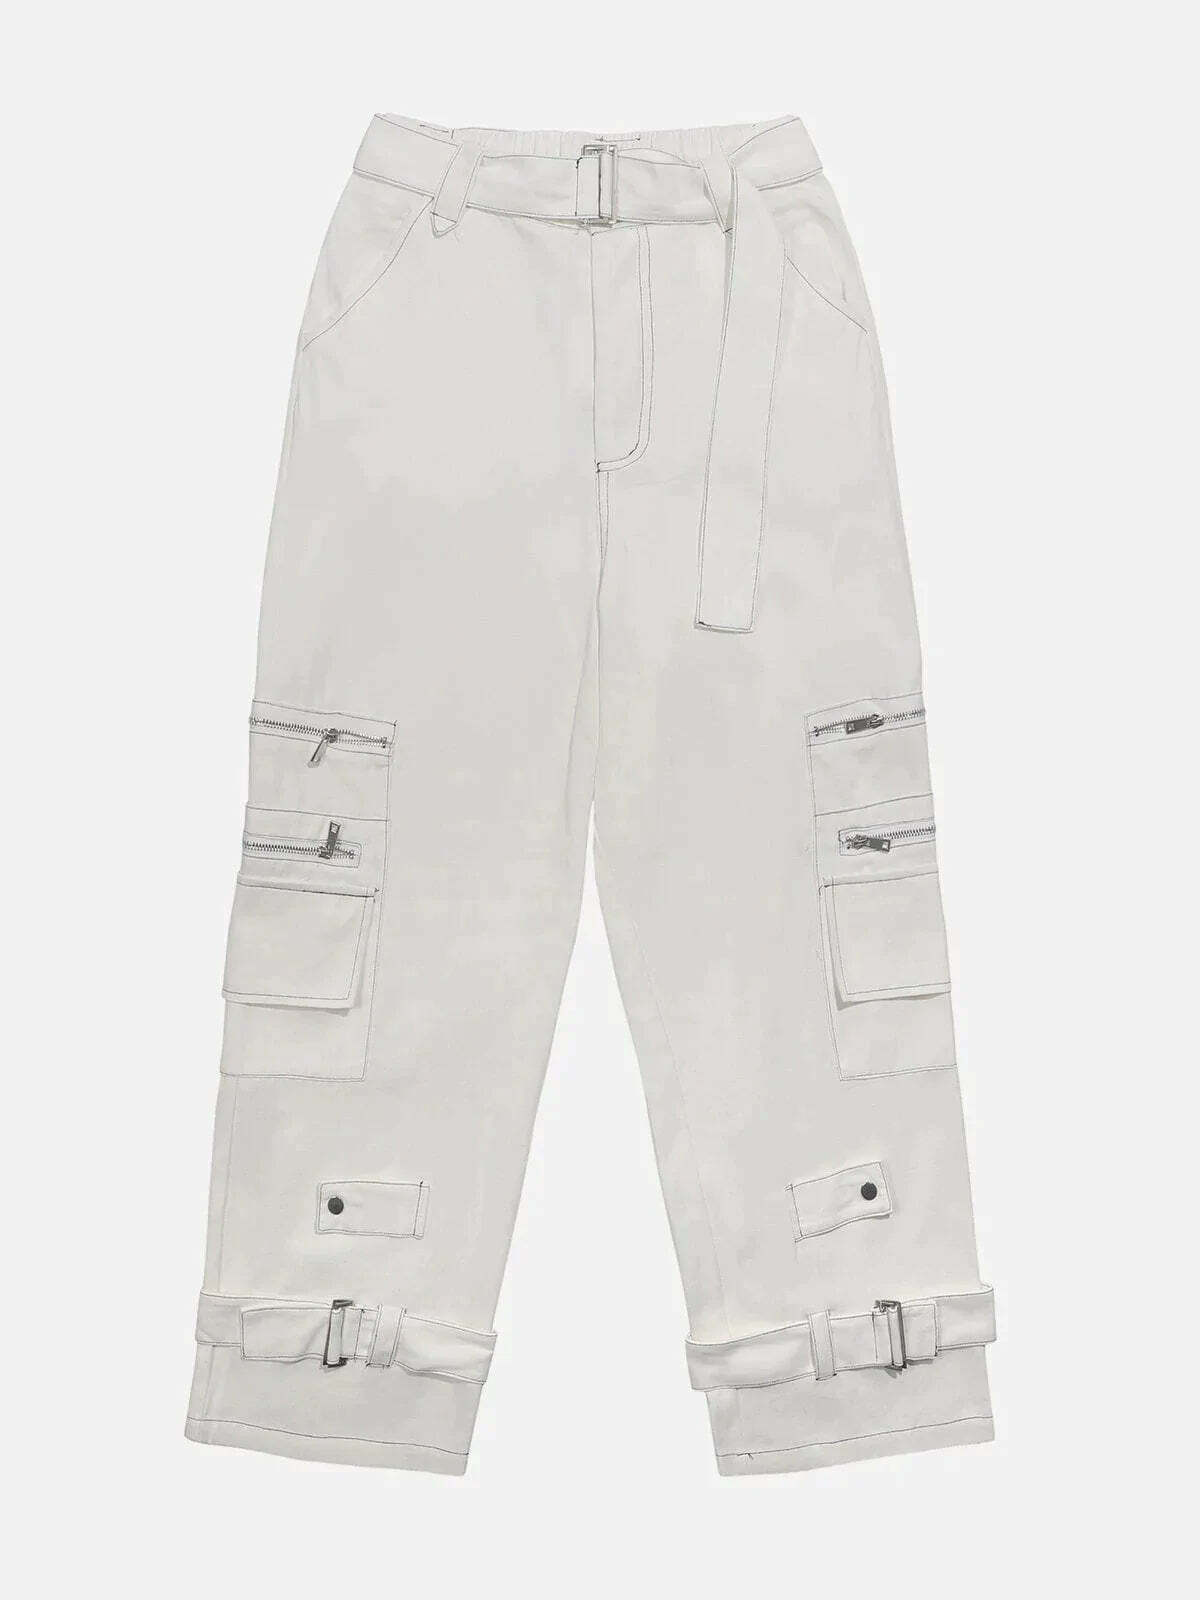 zipup cargo pants edgy streetwear essential 3620